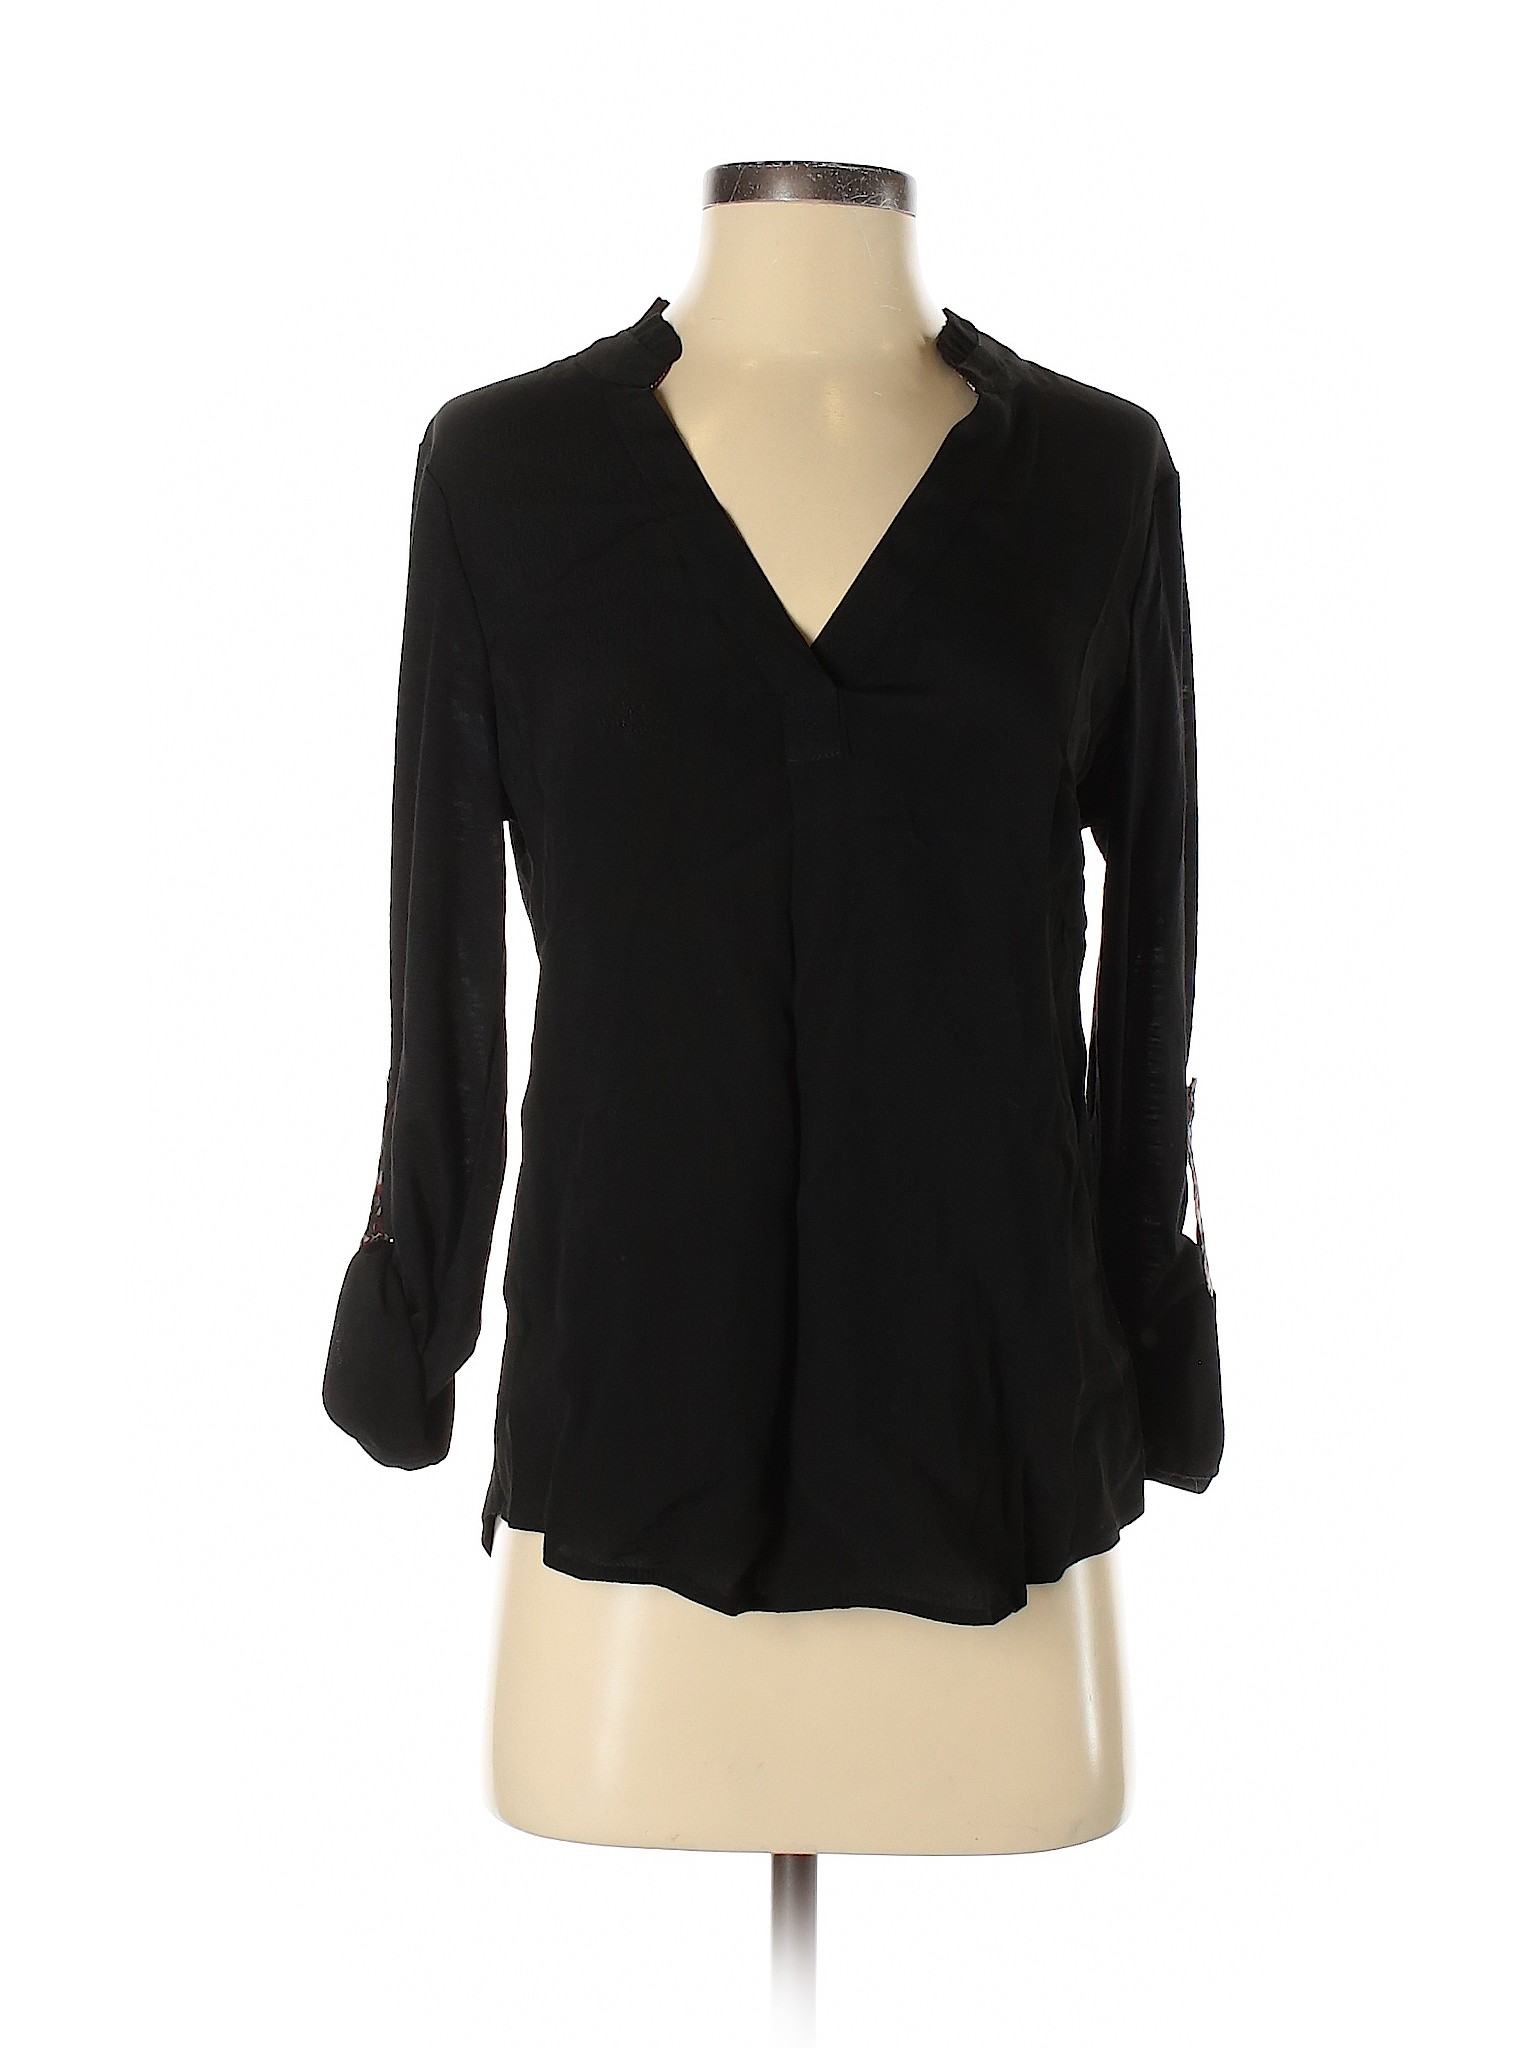 NWT Portrait Women Black Long Sleeve Blouse S | eBay